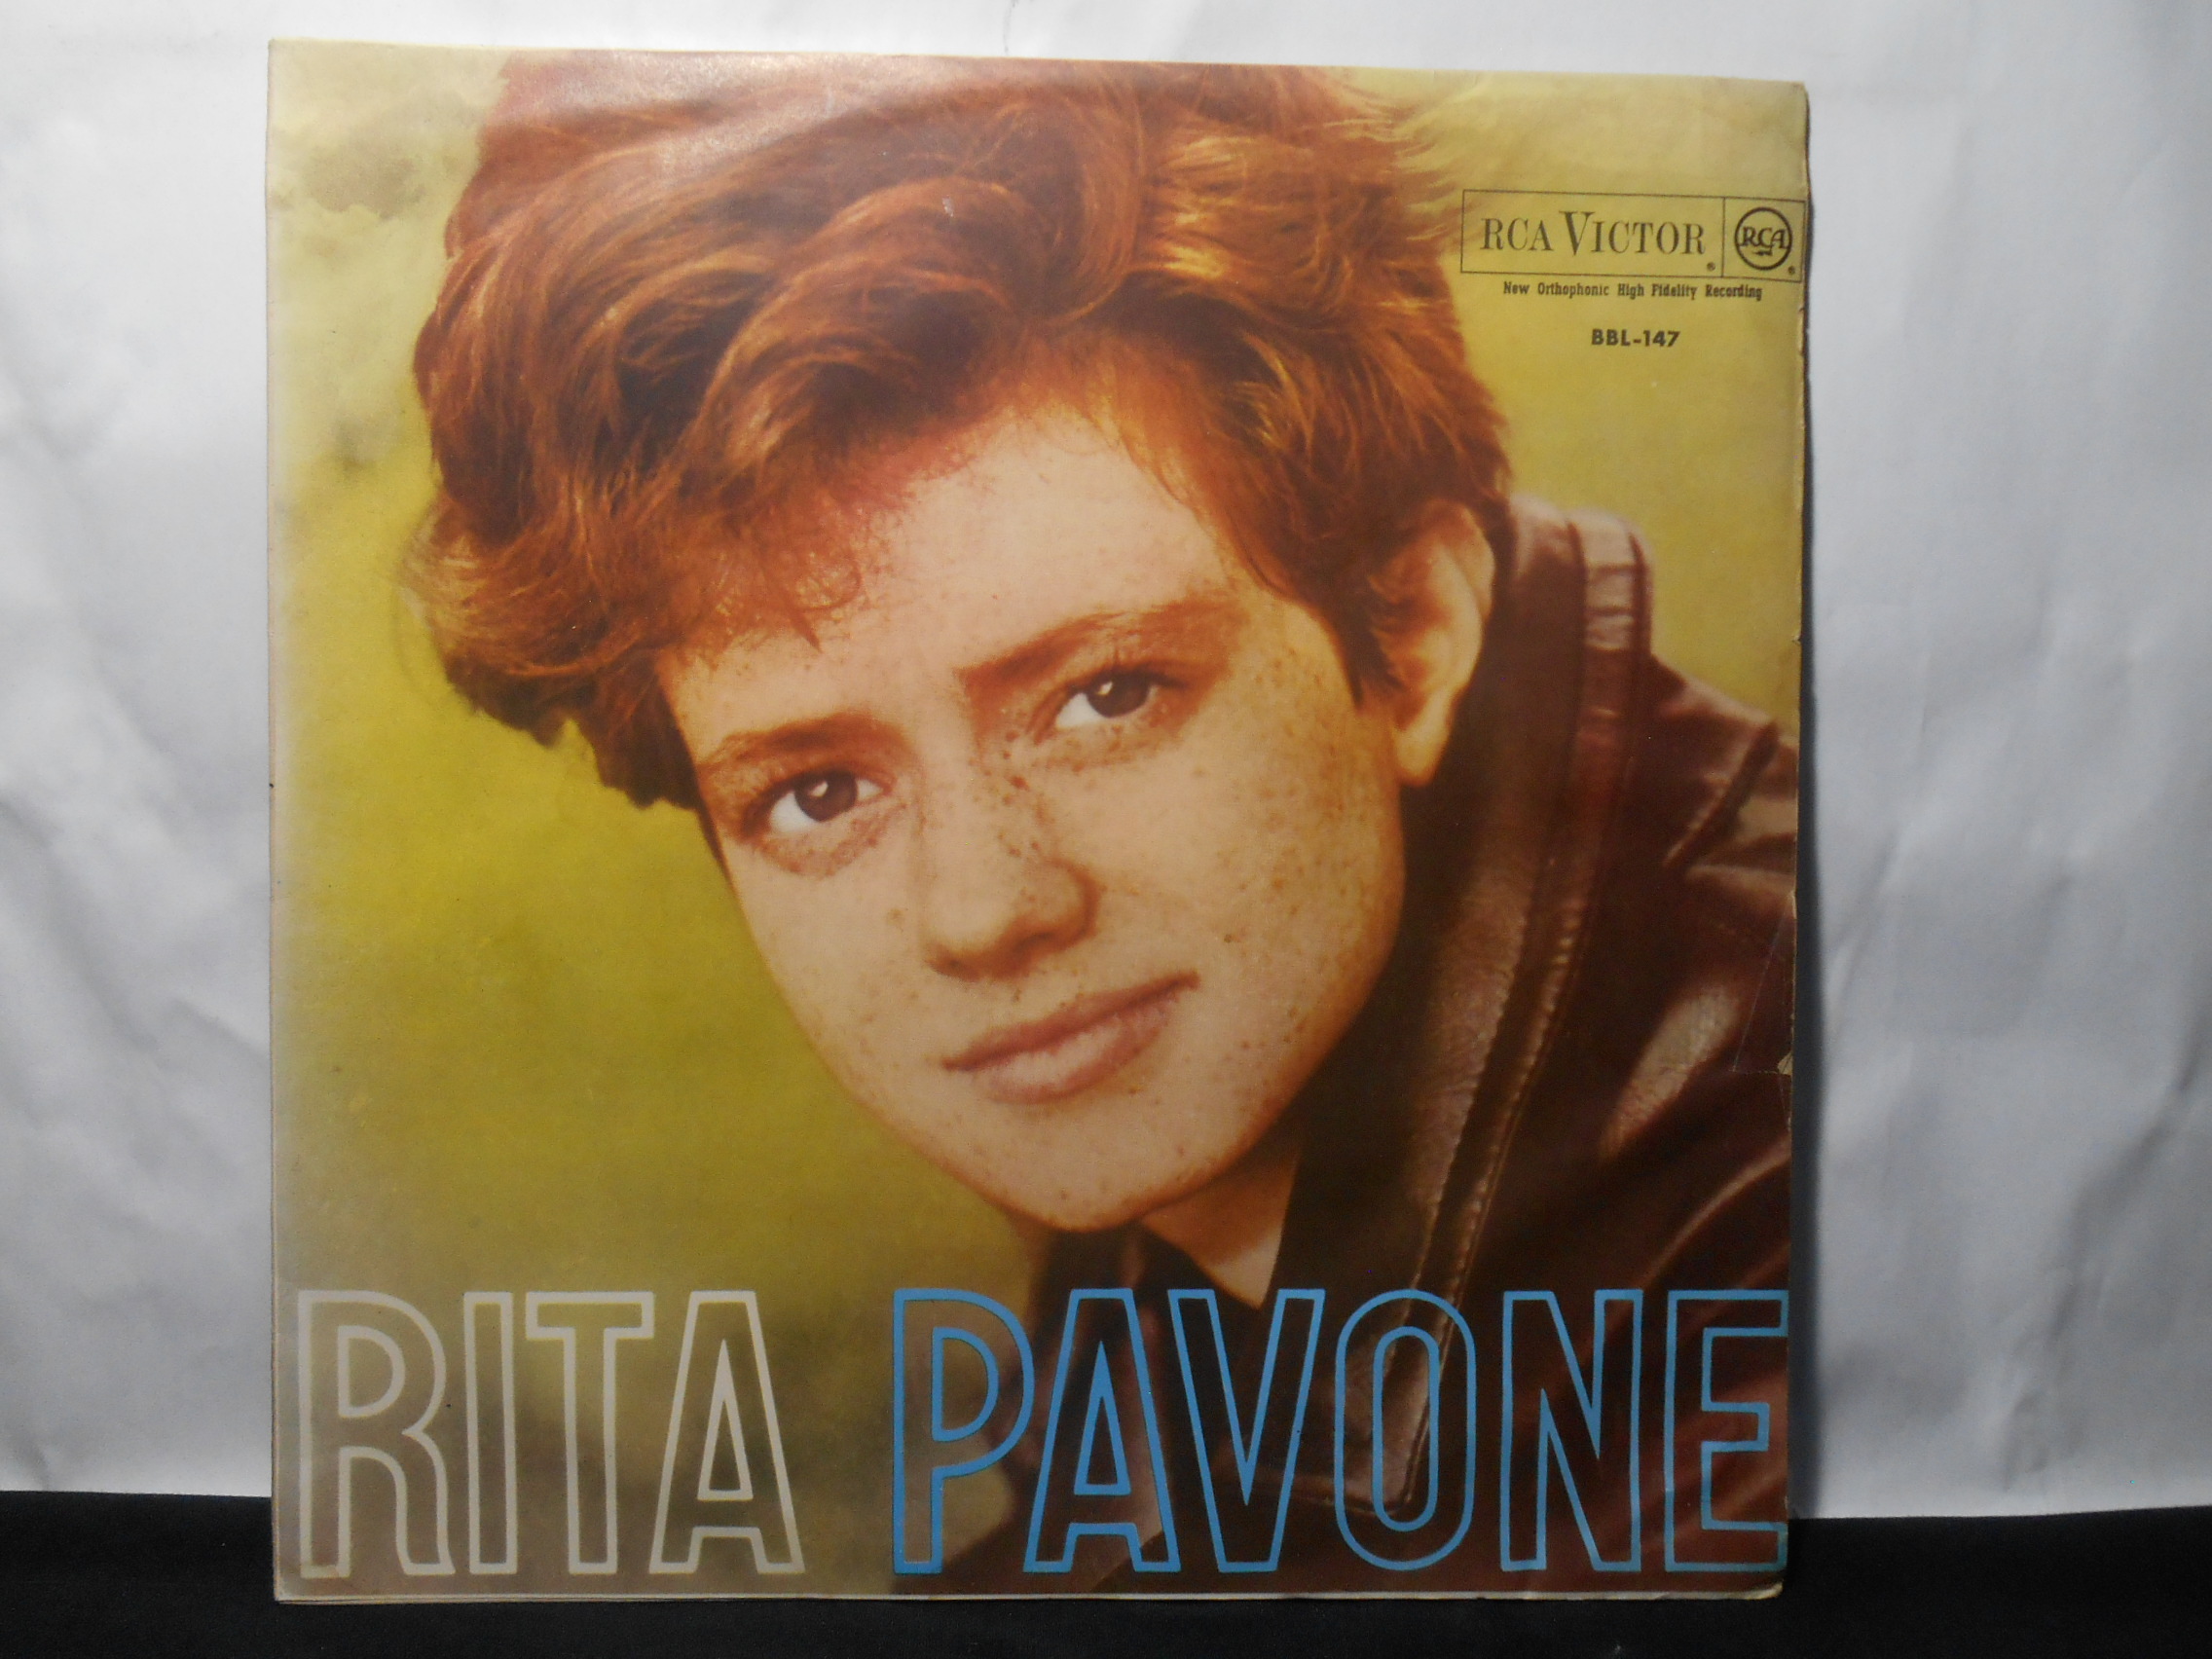 Vinil - Rita Pavone - 1963